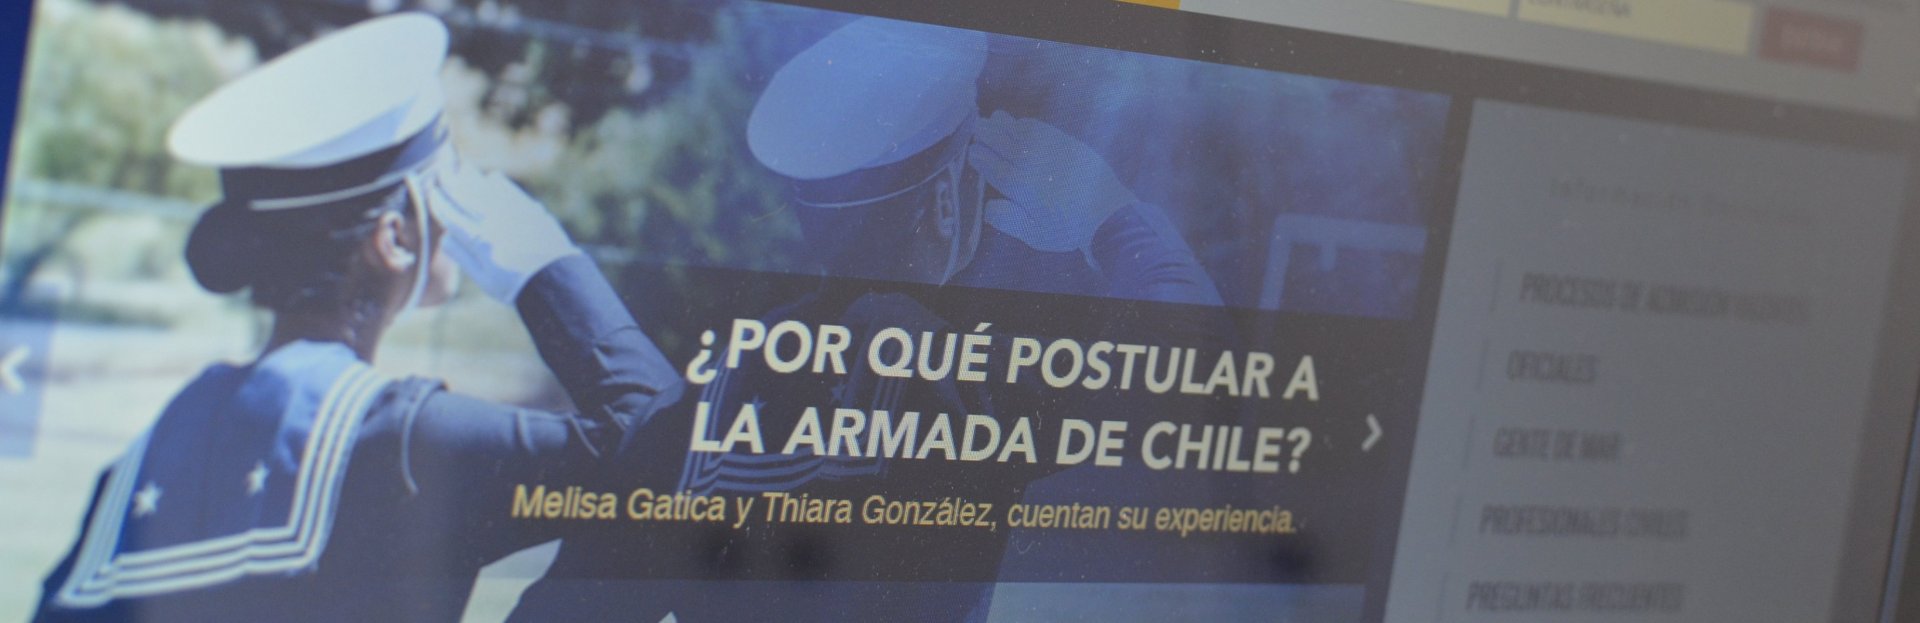 Pantalla mostrando sitio de admisión de la Armada de Chile